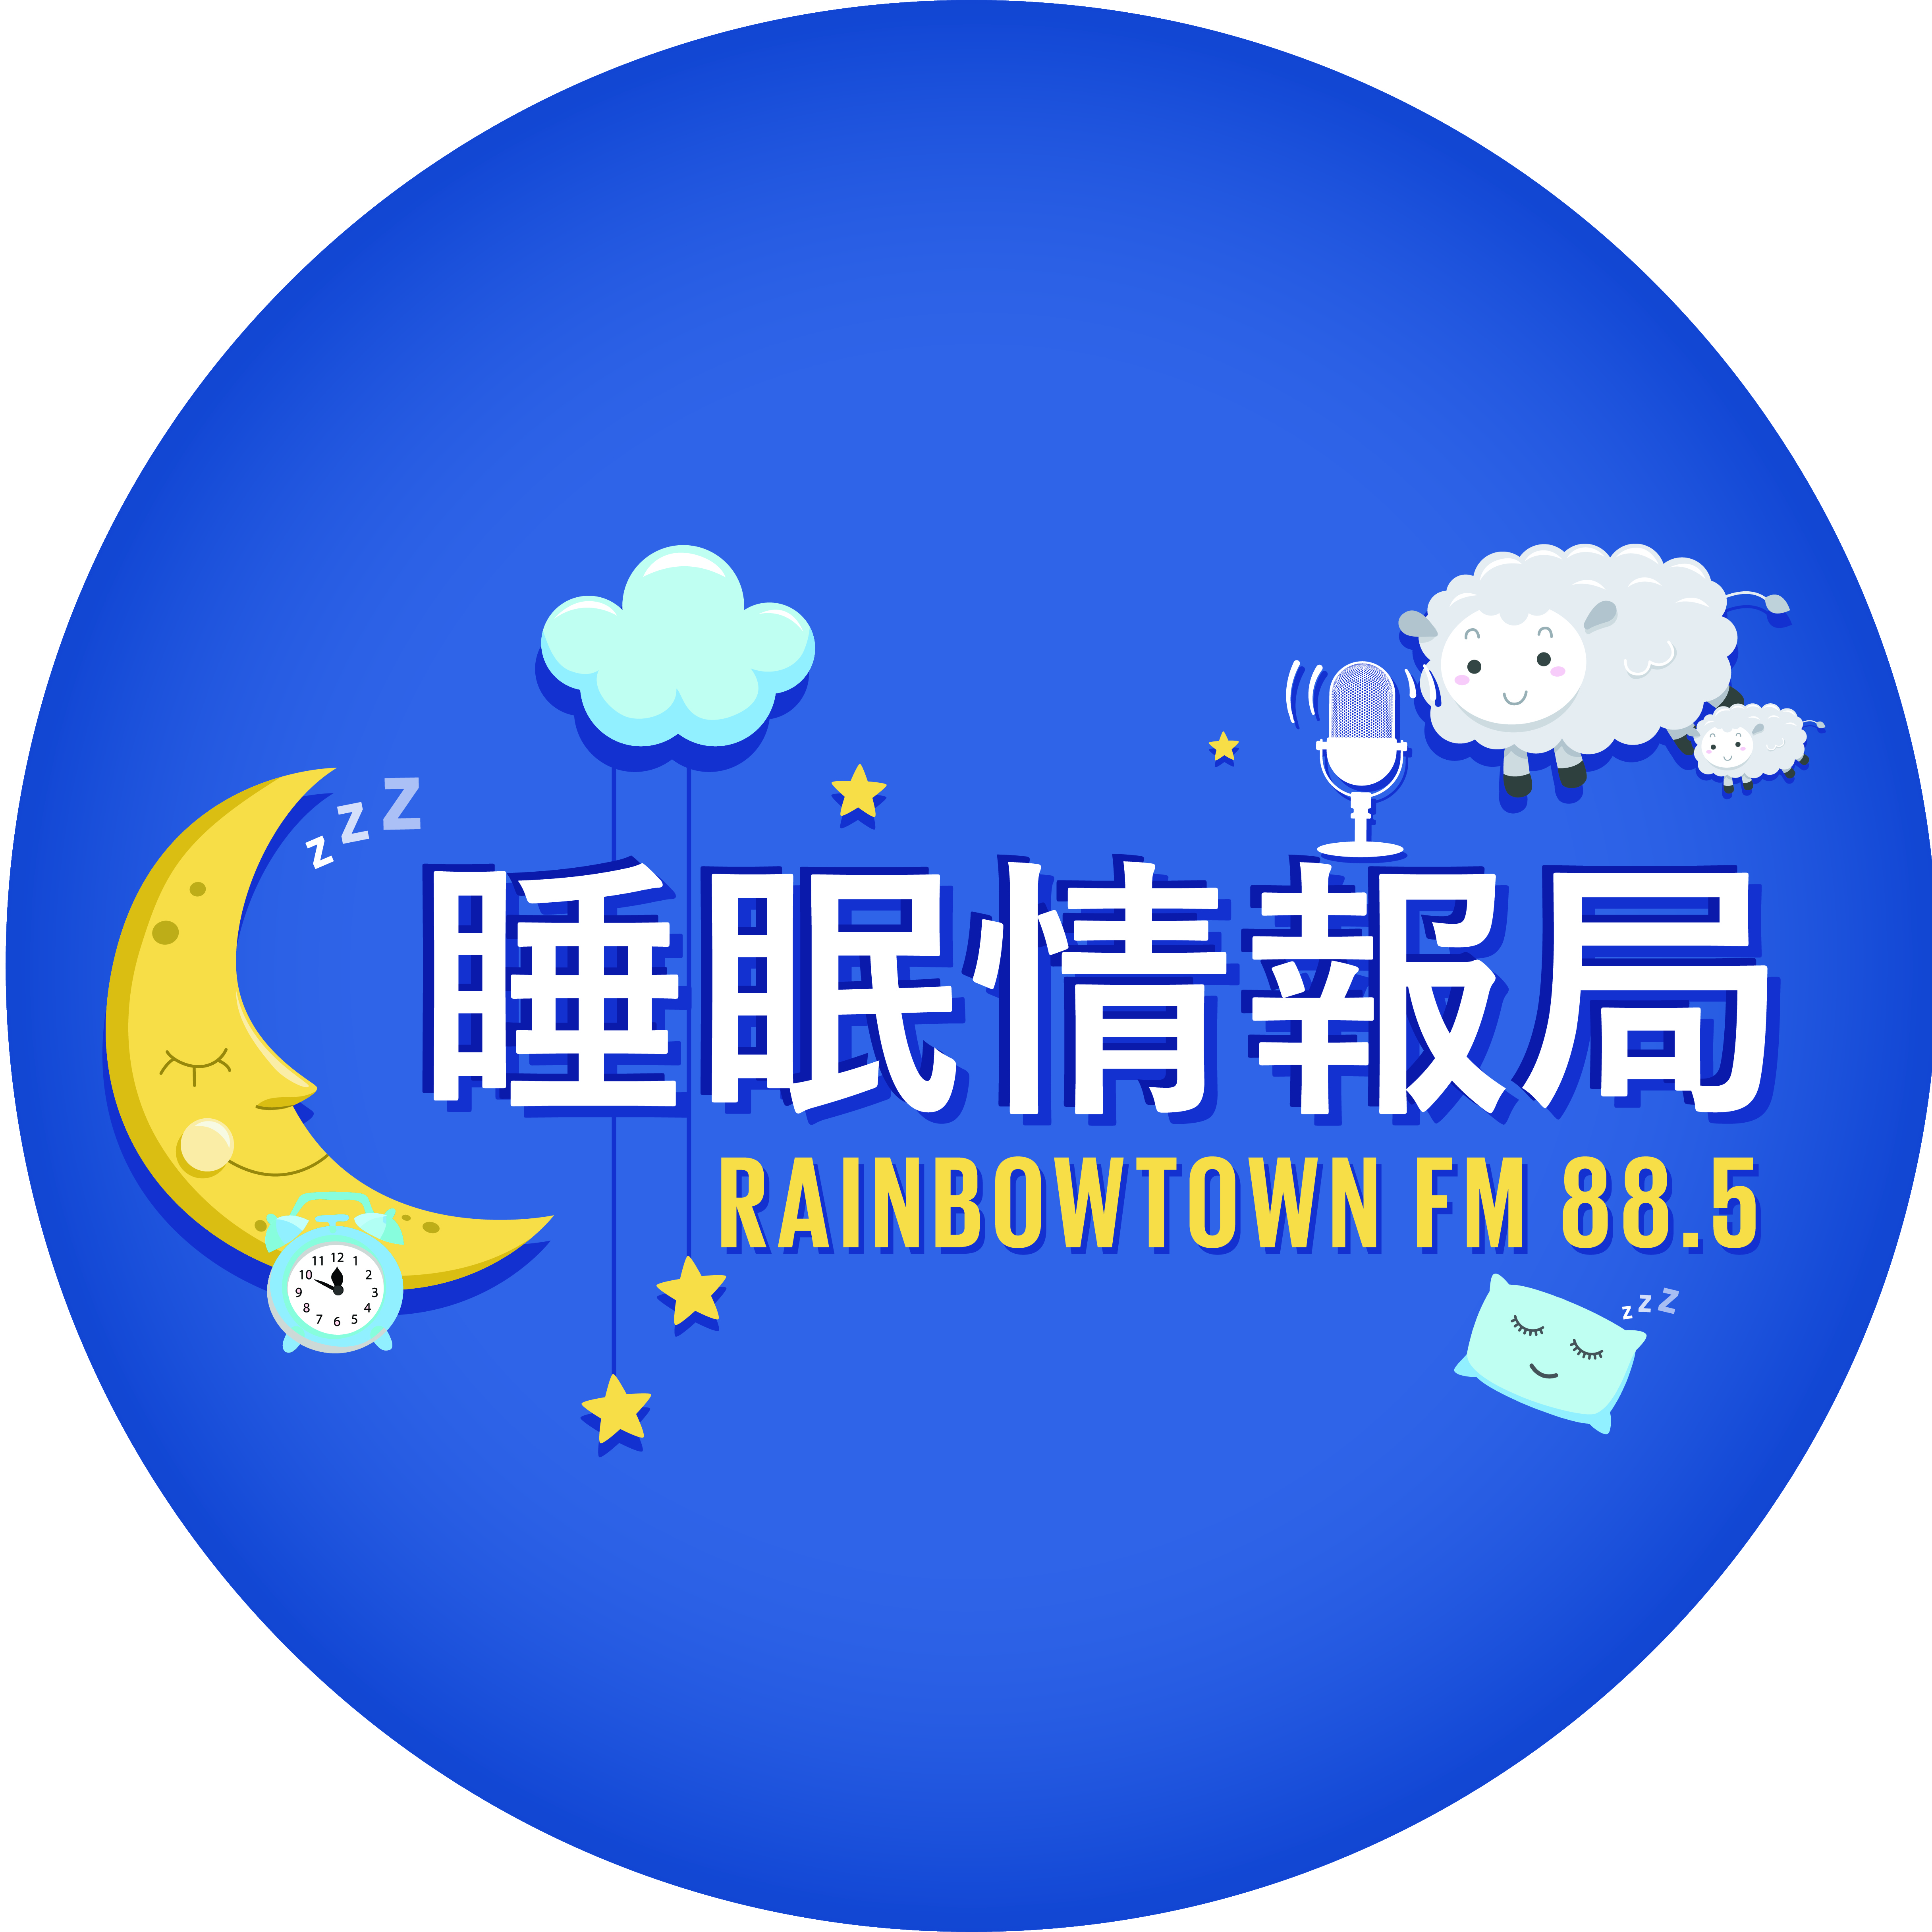 栁原万里子医師がレインボータウンFMラジオに出演いたします。